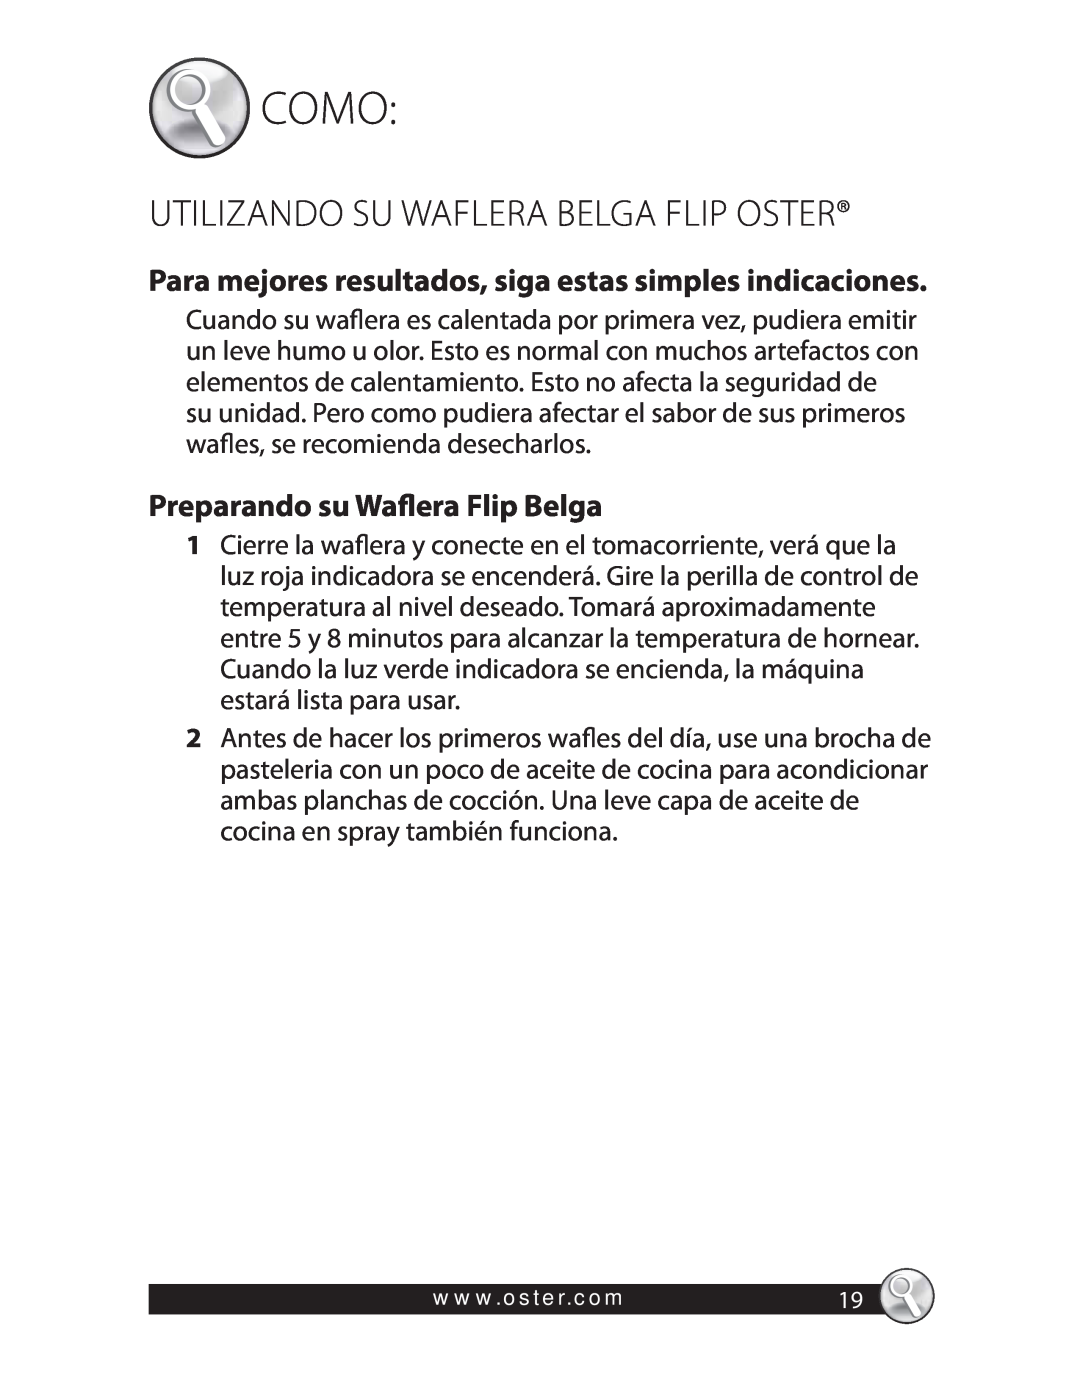 Oster CKSTWFBF20 warranty Como, Utilizando Su Waflera Belga Flip Oster, Preparando su Waflera Flip Belga 